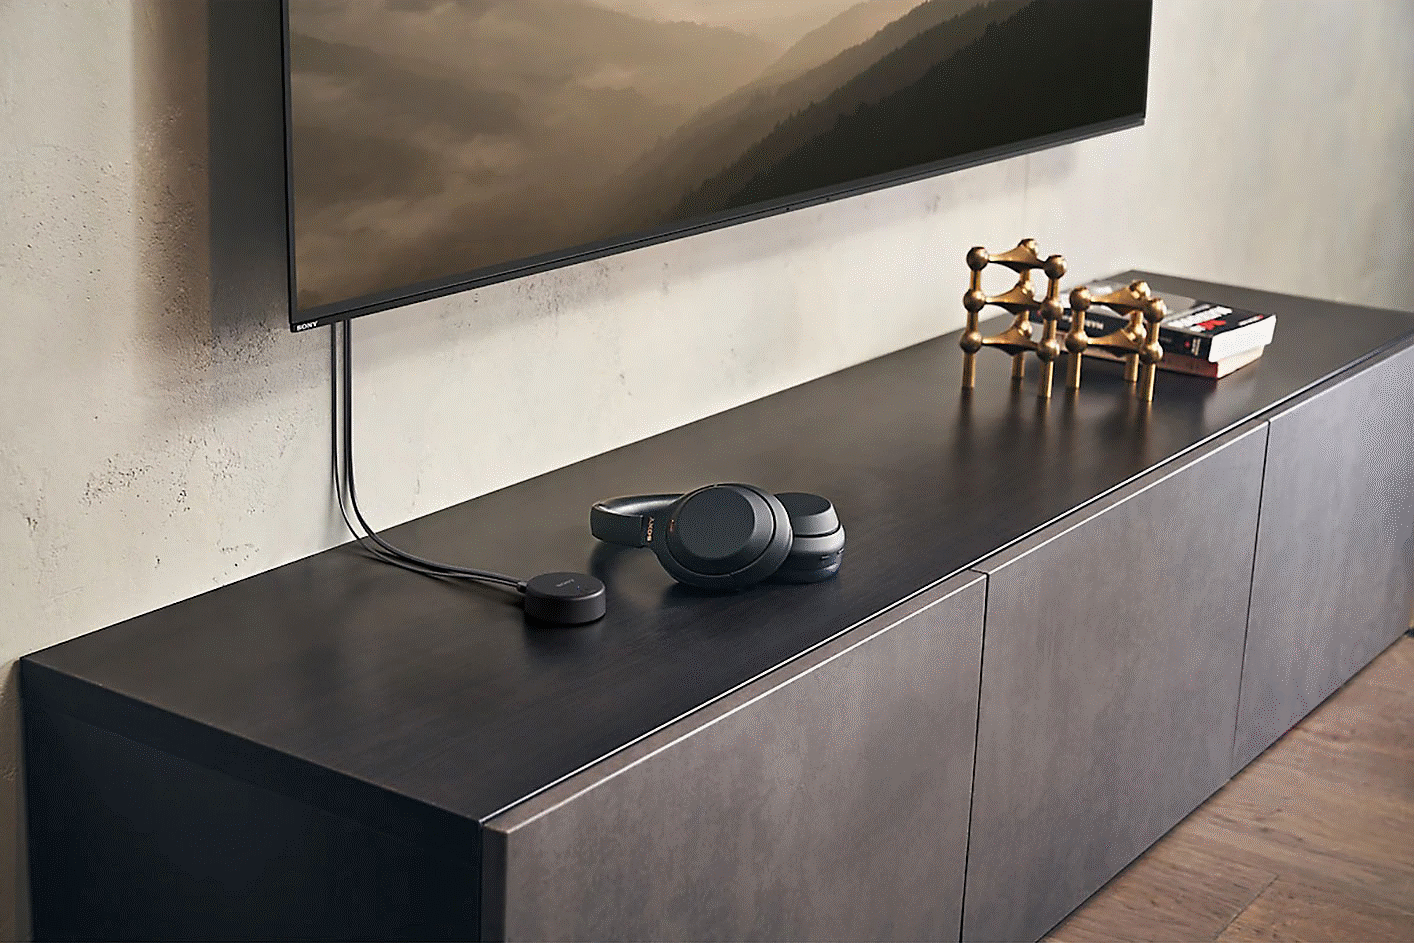 一對黑色 Sony WH-CH720 耳機放在壁掛式電視下的電視櫃中